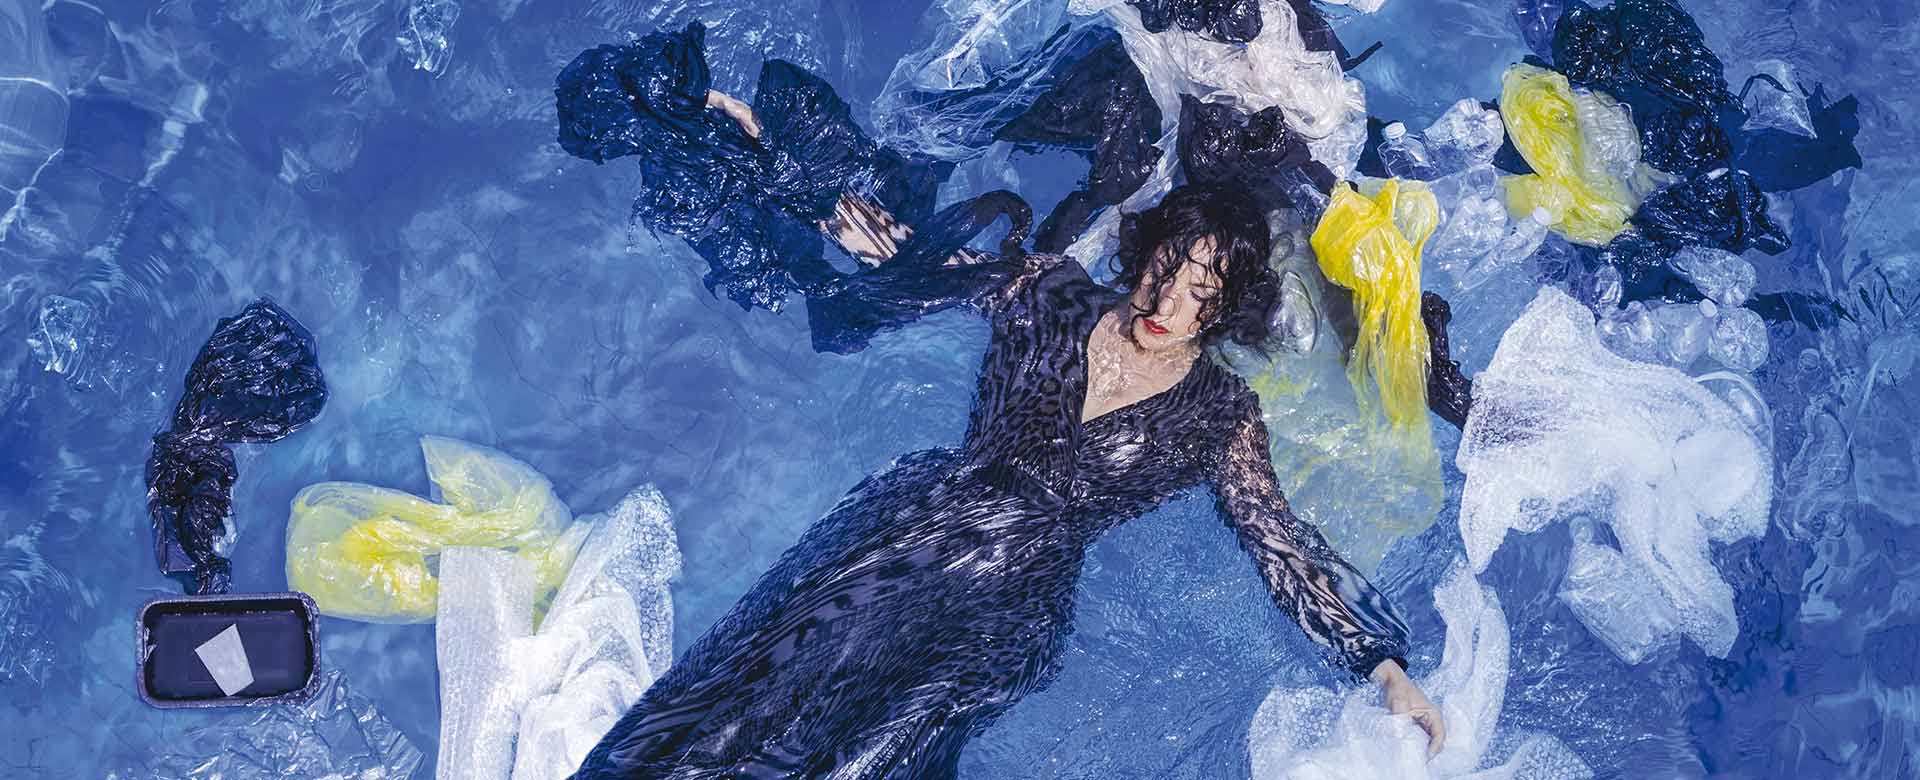 Immagine di Federica Brignone immersa nell’acqua invasa dalla plastica